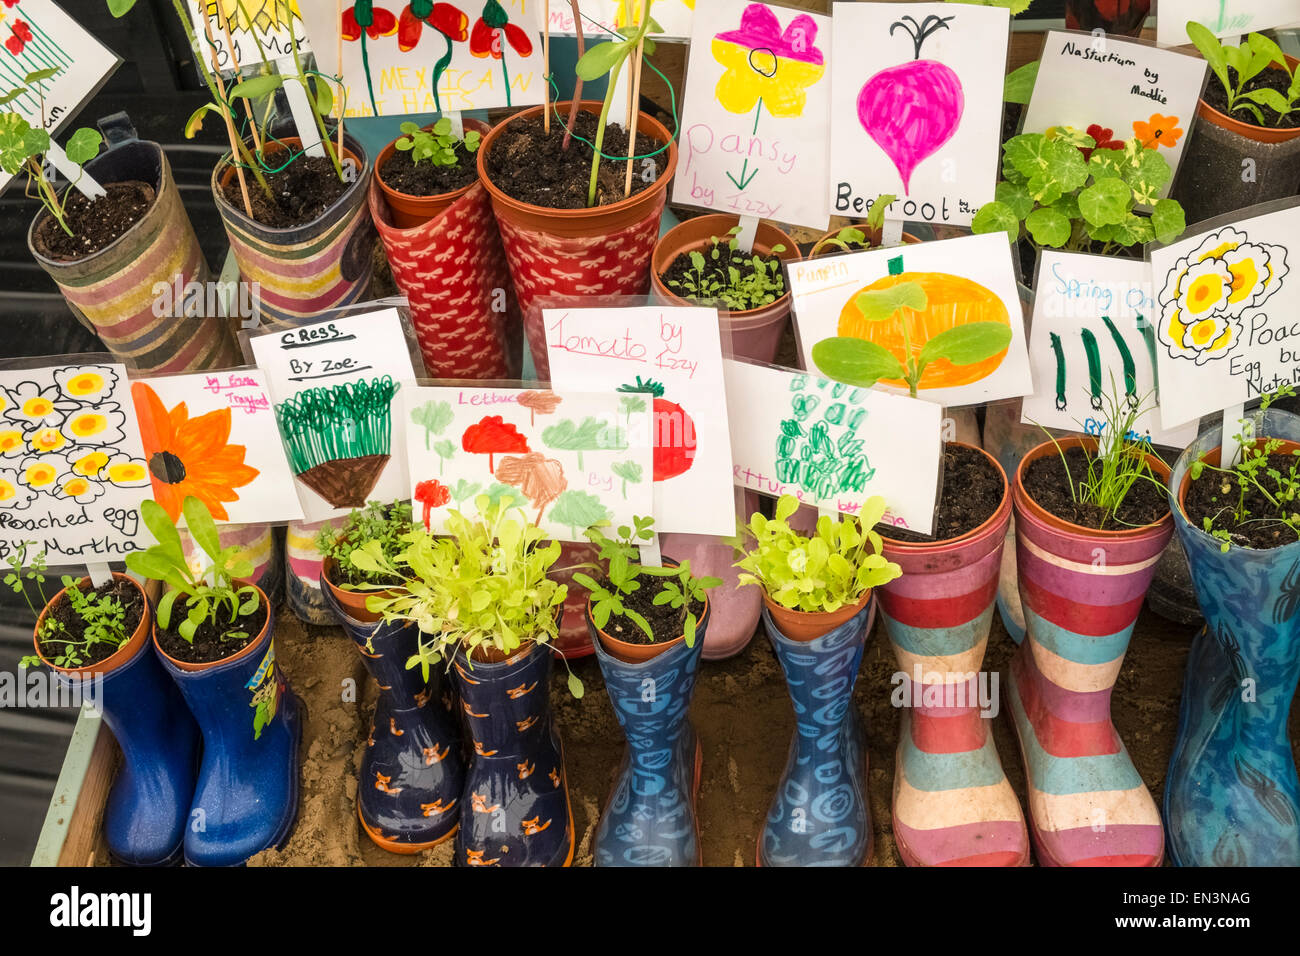 Les jeunes plants cultivés en conteneurs dans Enfants bottes wellington colorés, avec des étiquettes attachées. Banque D'Images